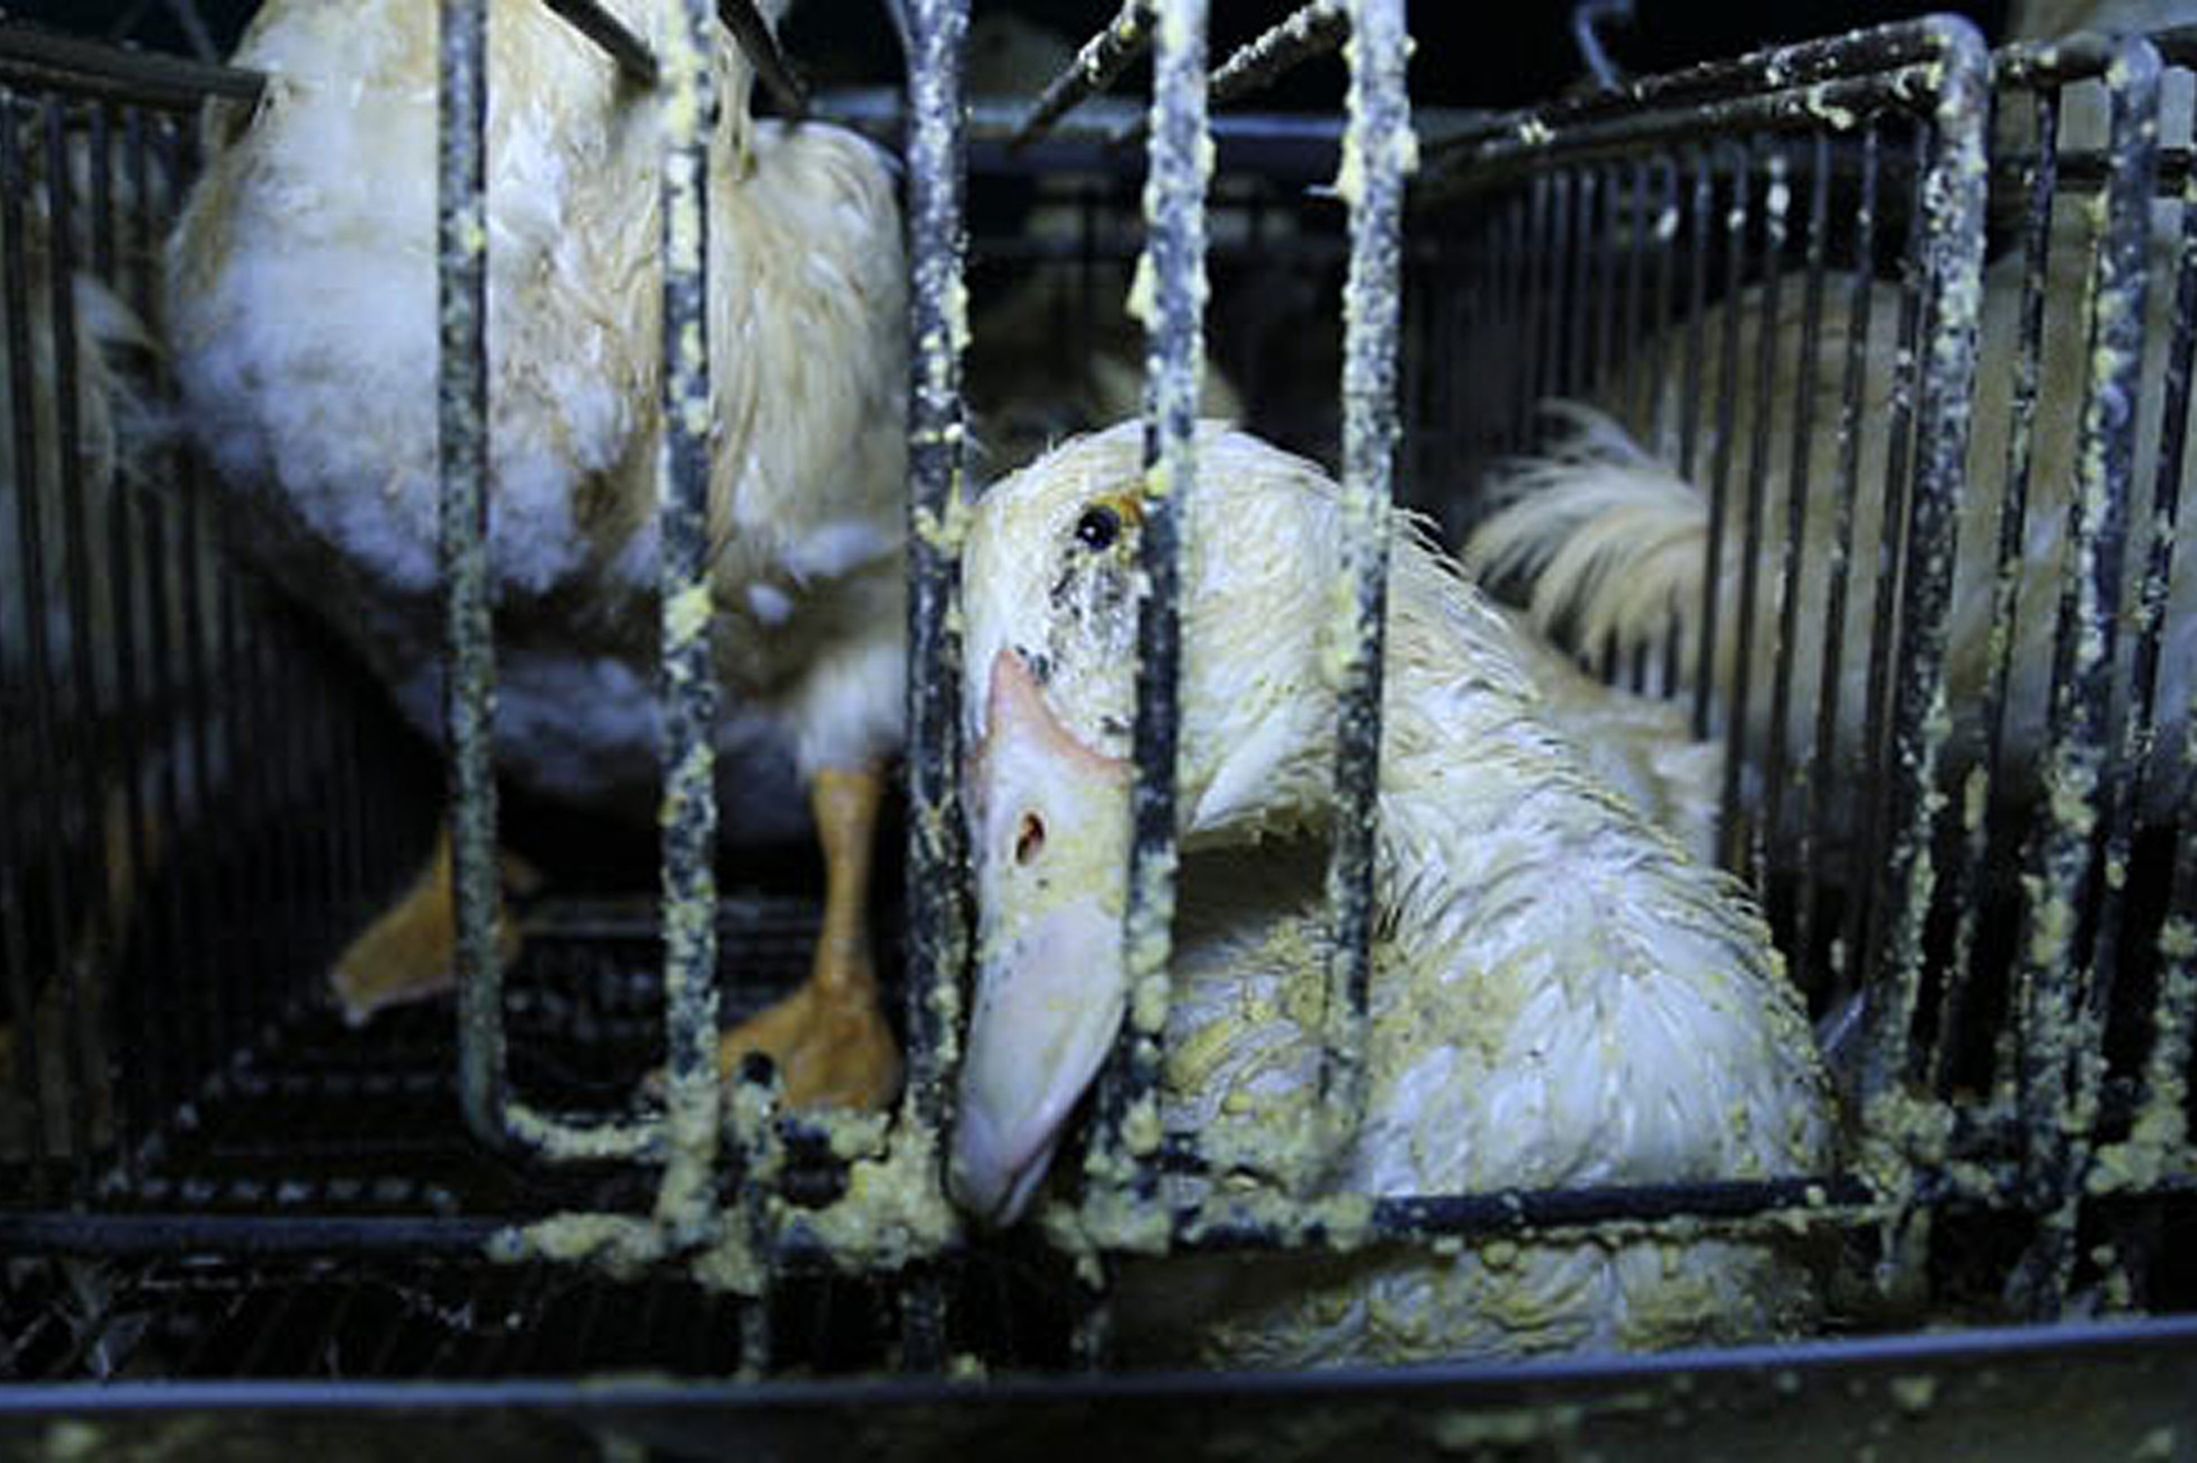 A pokol farmja: innen került a libamáj Gordon Ramsay éttermeibe - sokkoló fotók és videó